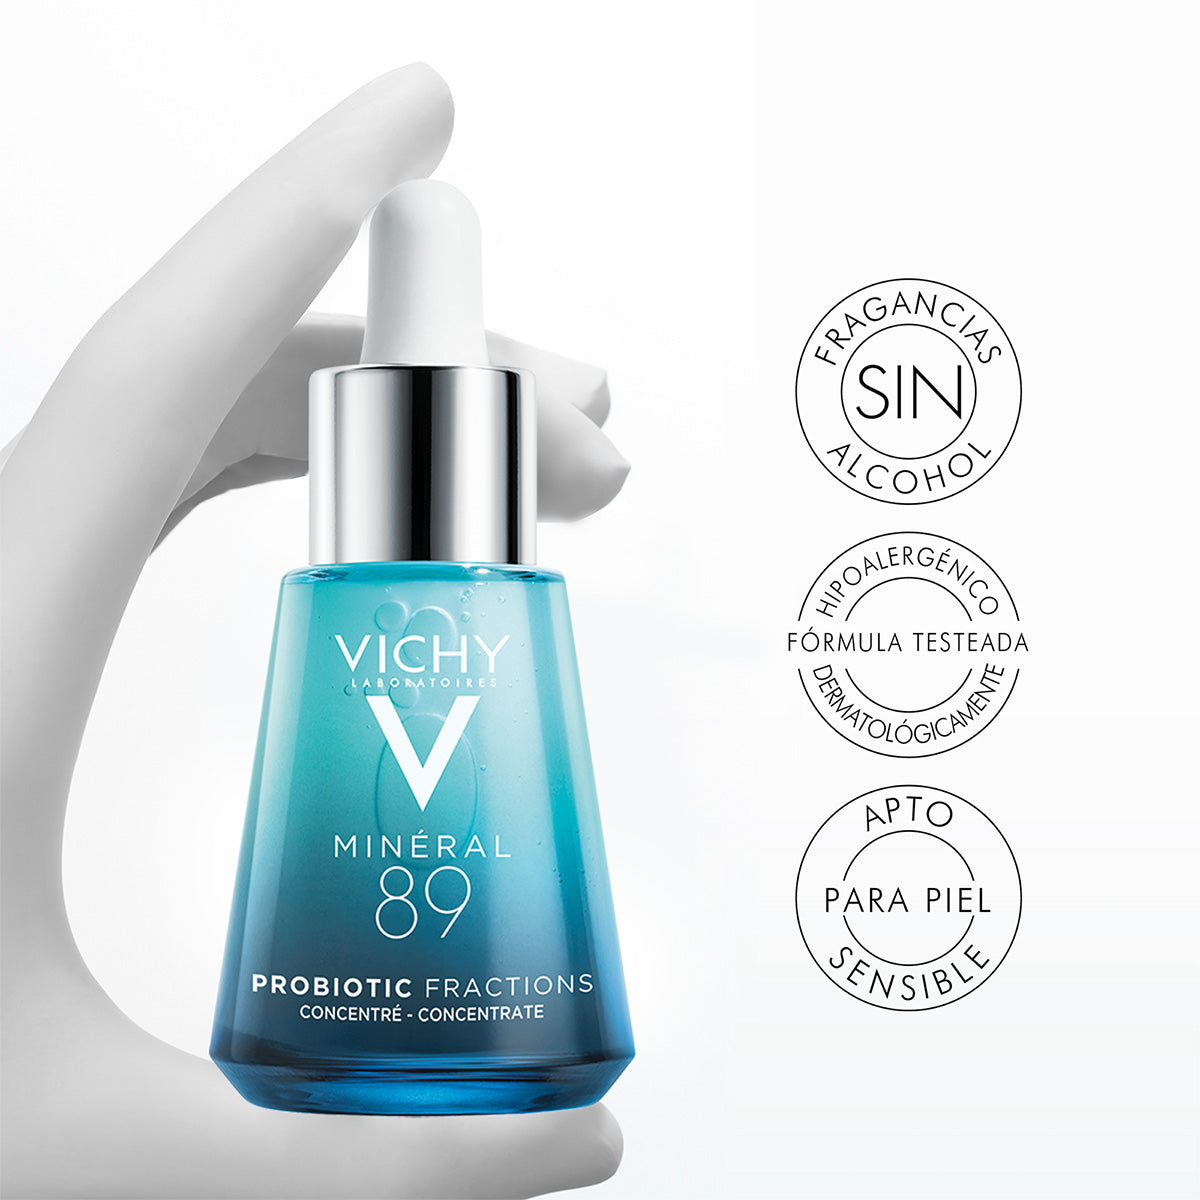 Vichy Mineral 89 Probiotic Fractions, Concentrado regenerador y reparador, 30ml.